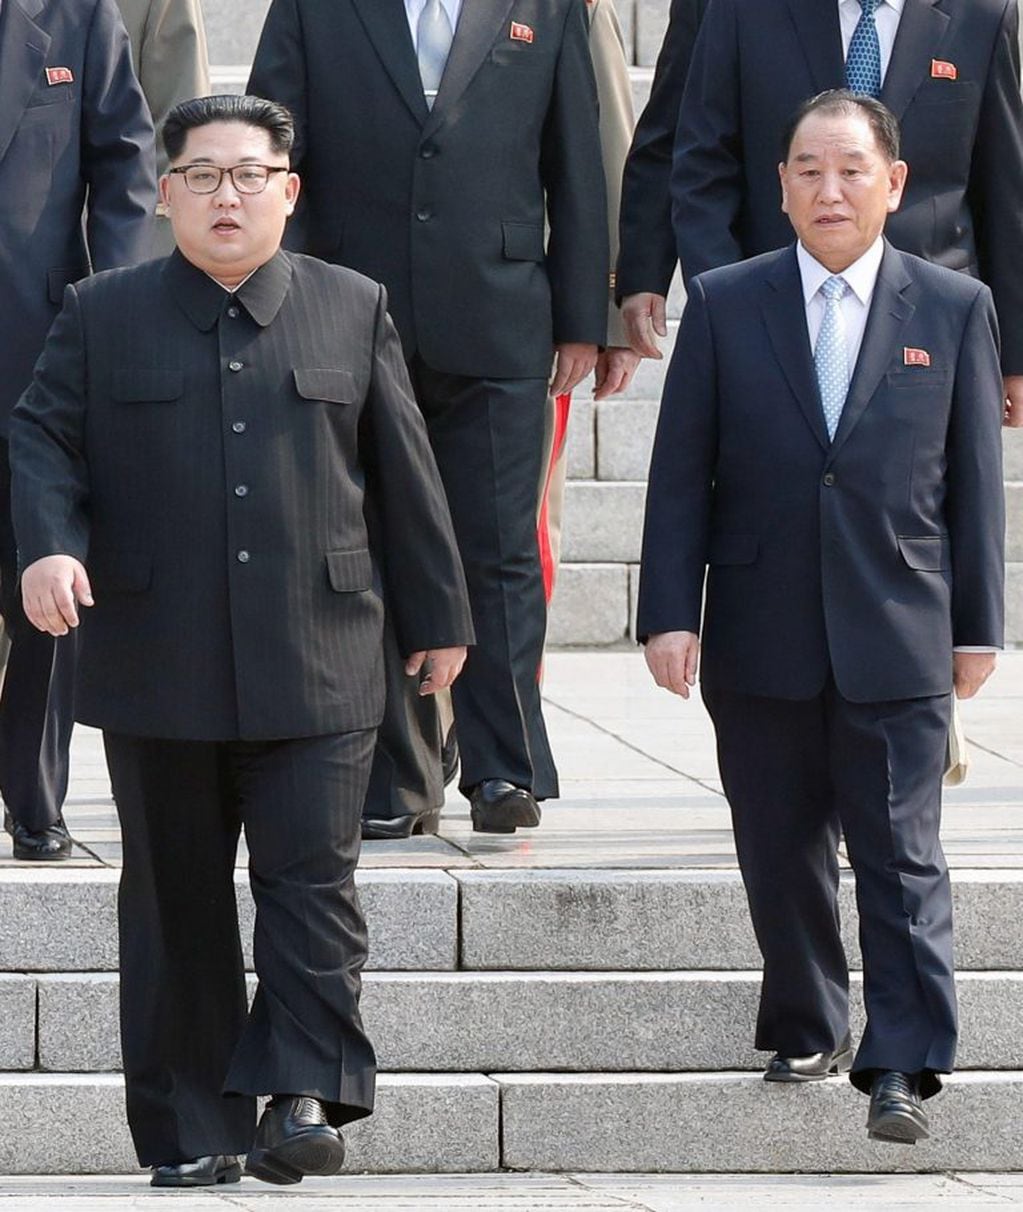 El líder norcoreano, Kim Jong-un y uno de los altos cargos del gobierno norcoreano Kim Yong-chol.